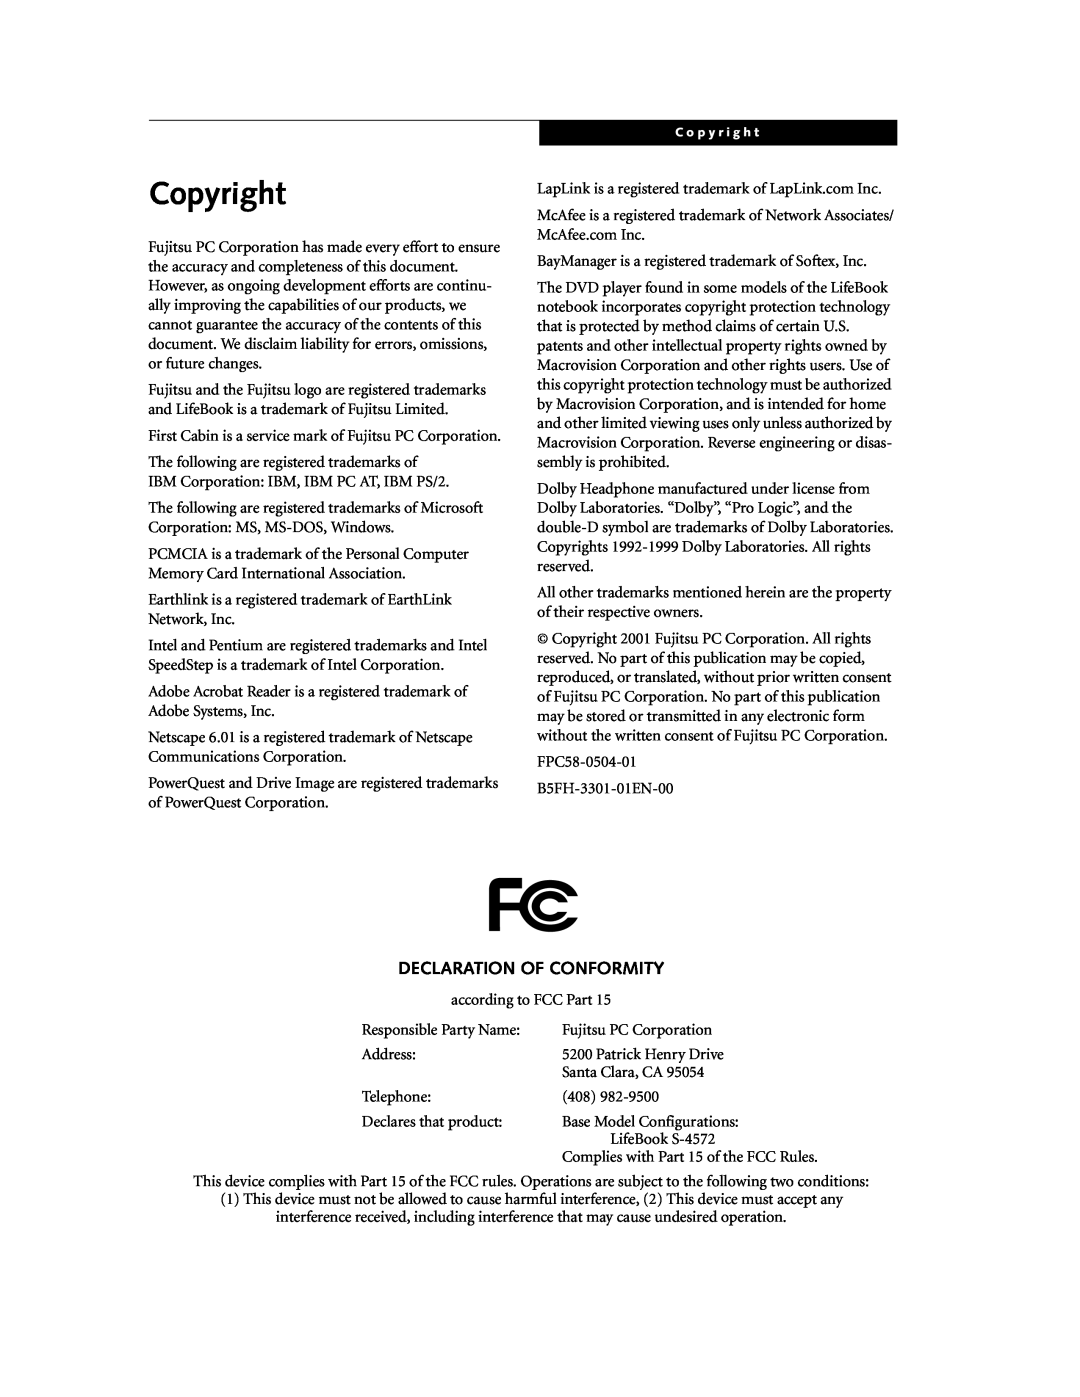 Fujitsu DVD Player manual Copyright, Declaration Of Conformity 